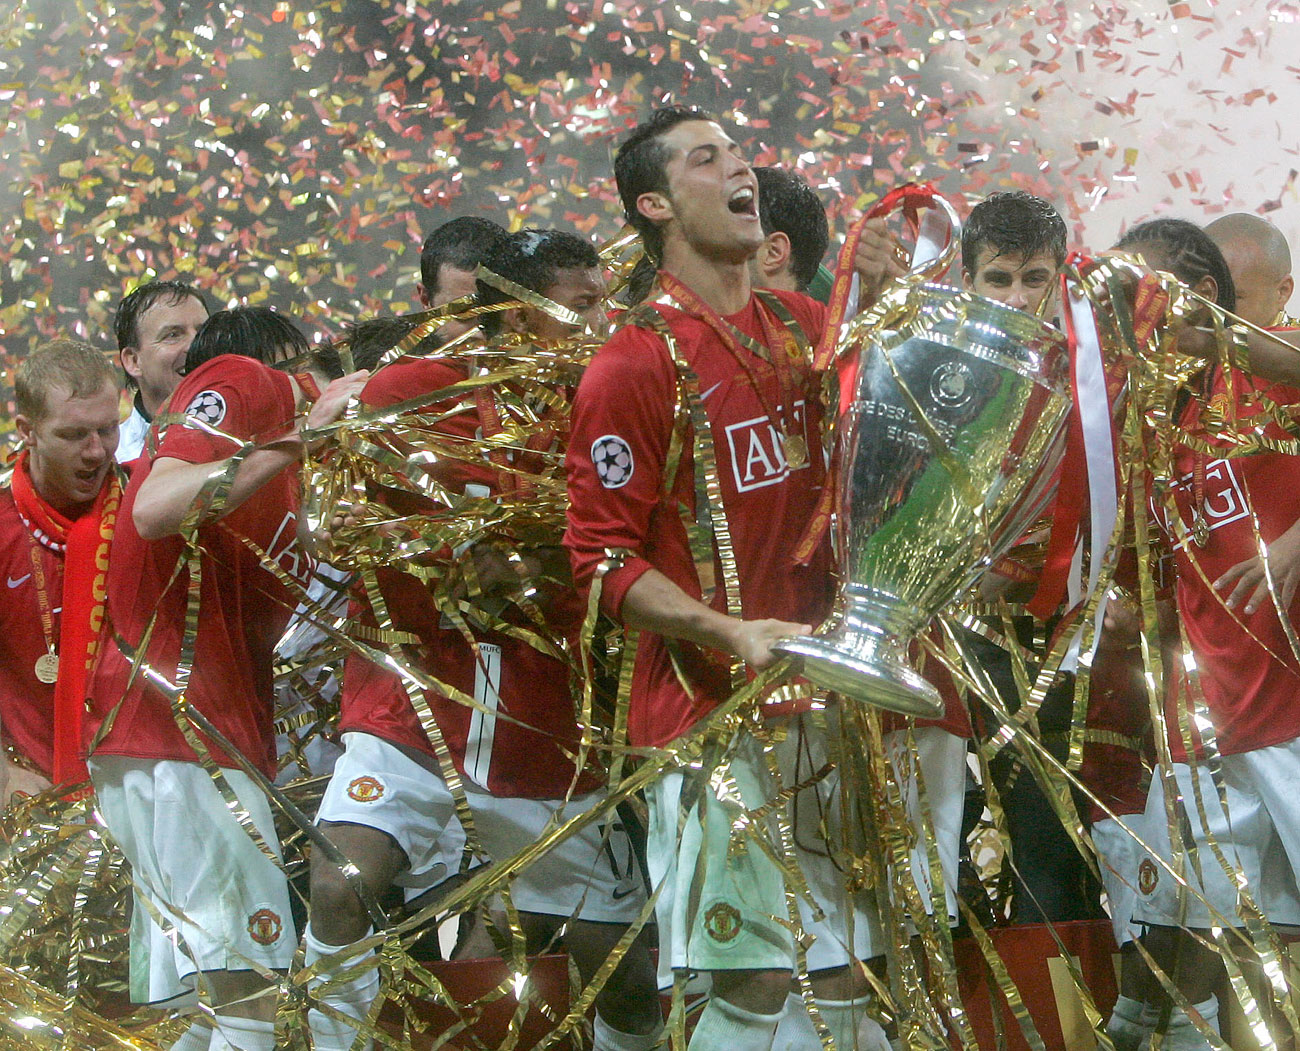 Per la finale della coppa Uefa del 2008 l’erba sintetica venne sostituita da un prato vero, ma in breve tempo il tappeto artificiale tornò nuovamente a ricoprire la superficie del campo // Cristiano Ronaldo al termine della finale di Champions League